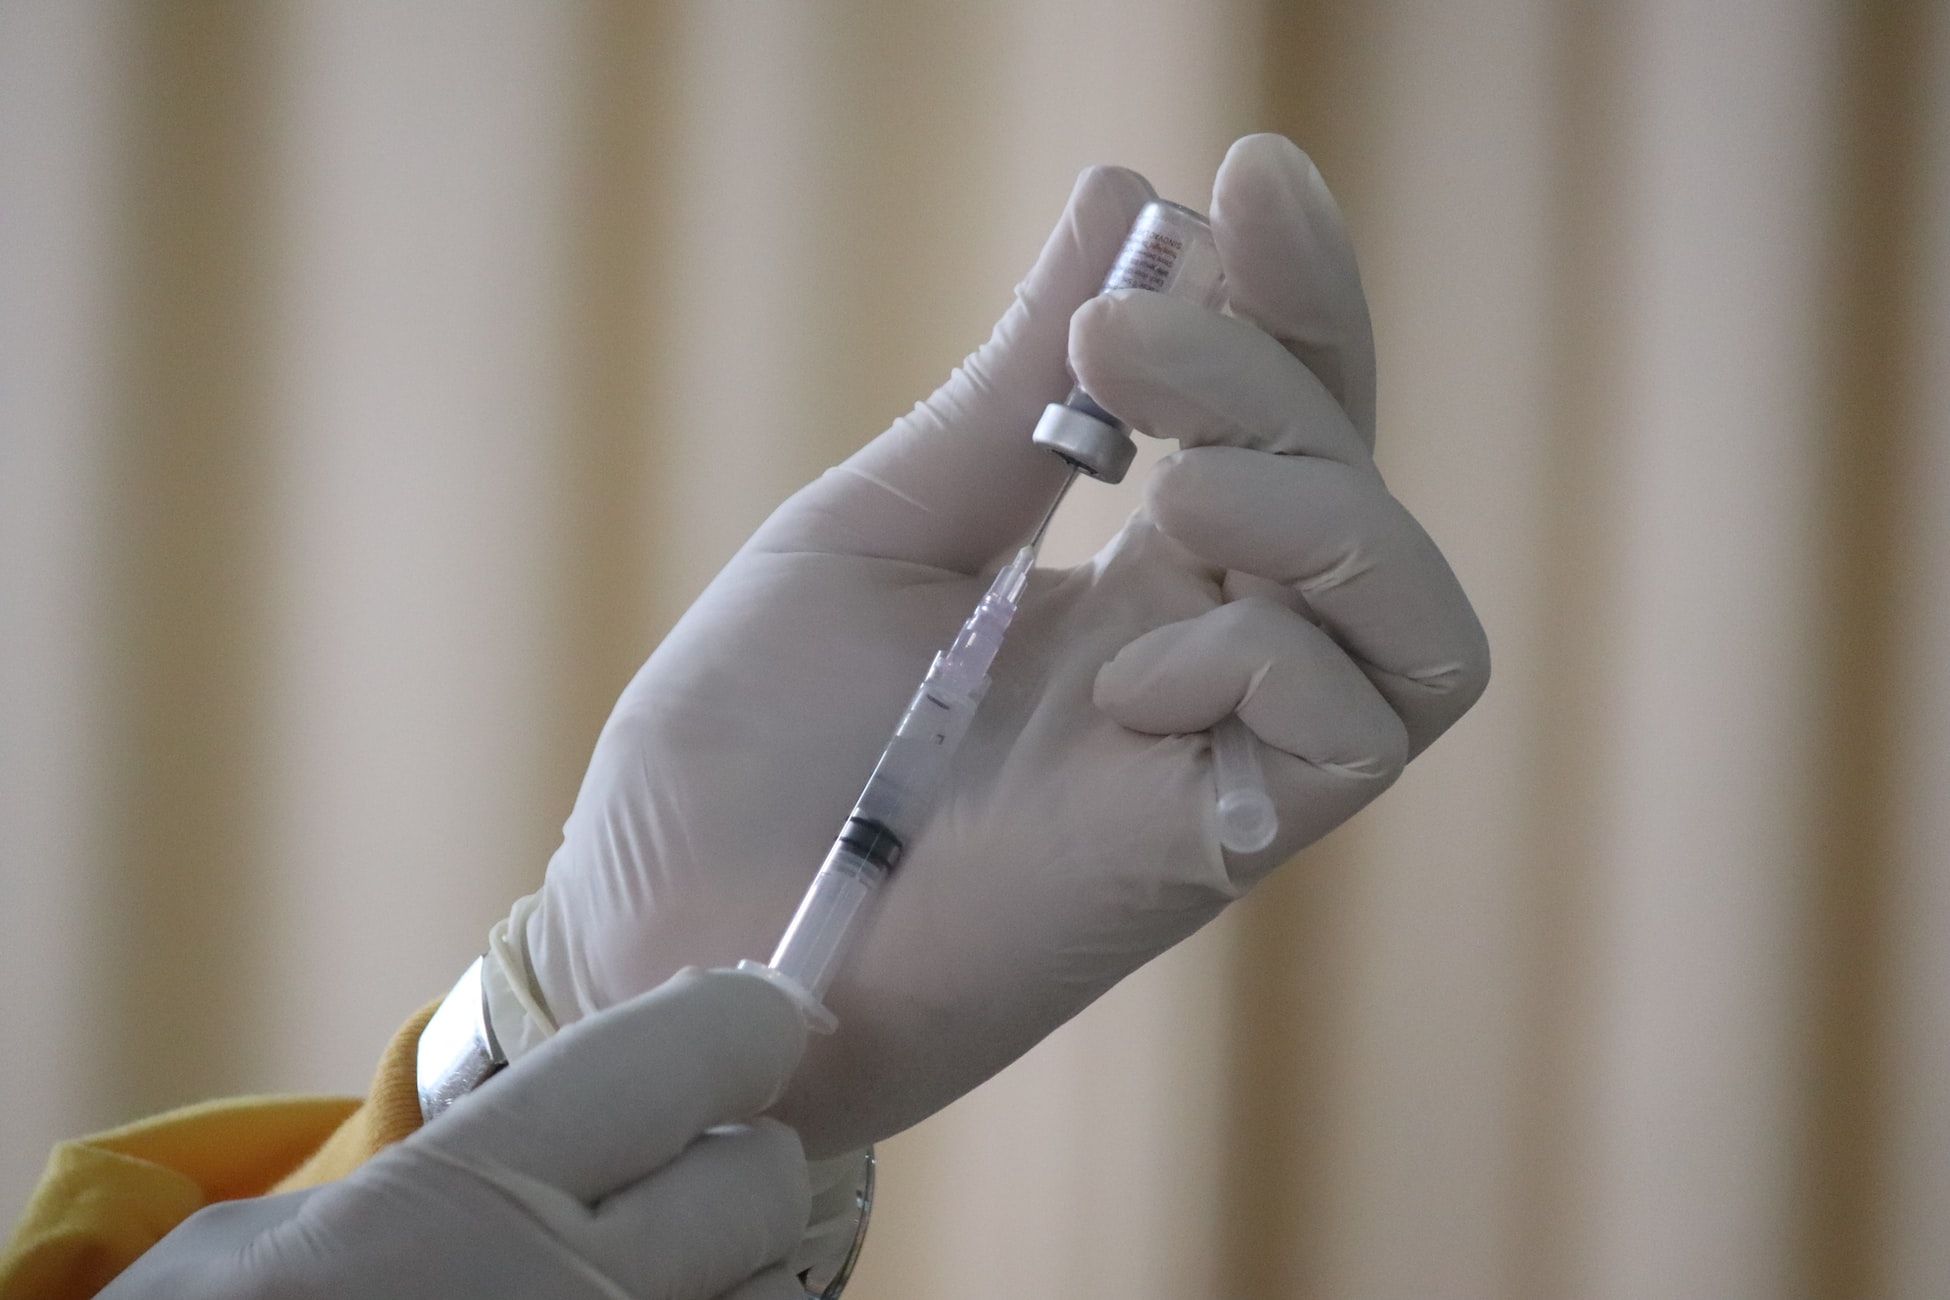 जायडस कैडिला की ZyCov-D वैक्सीन की 5 प्रमुख बातें, बच्चों के लिए देश का पहला टीका